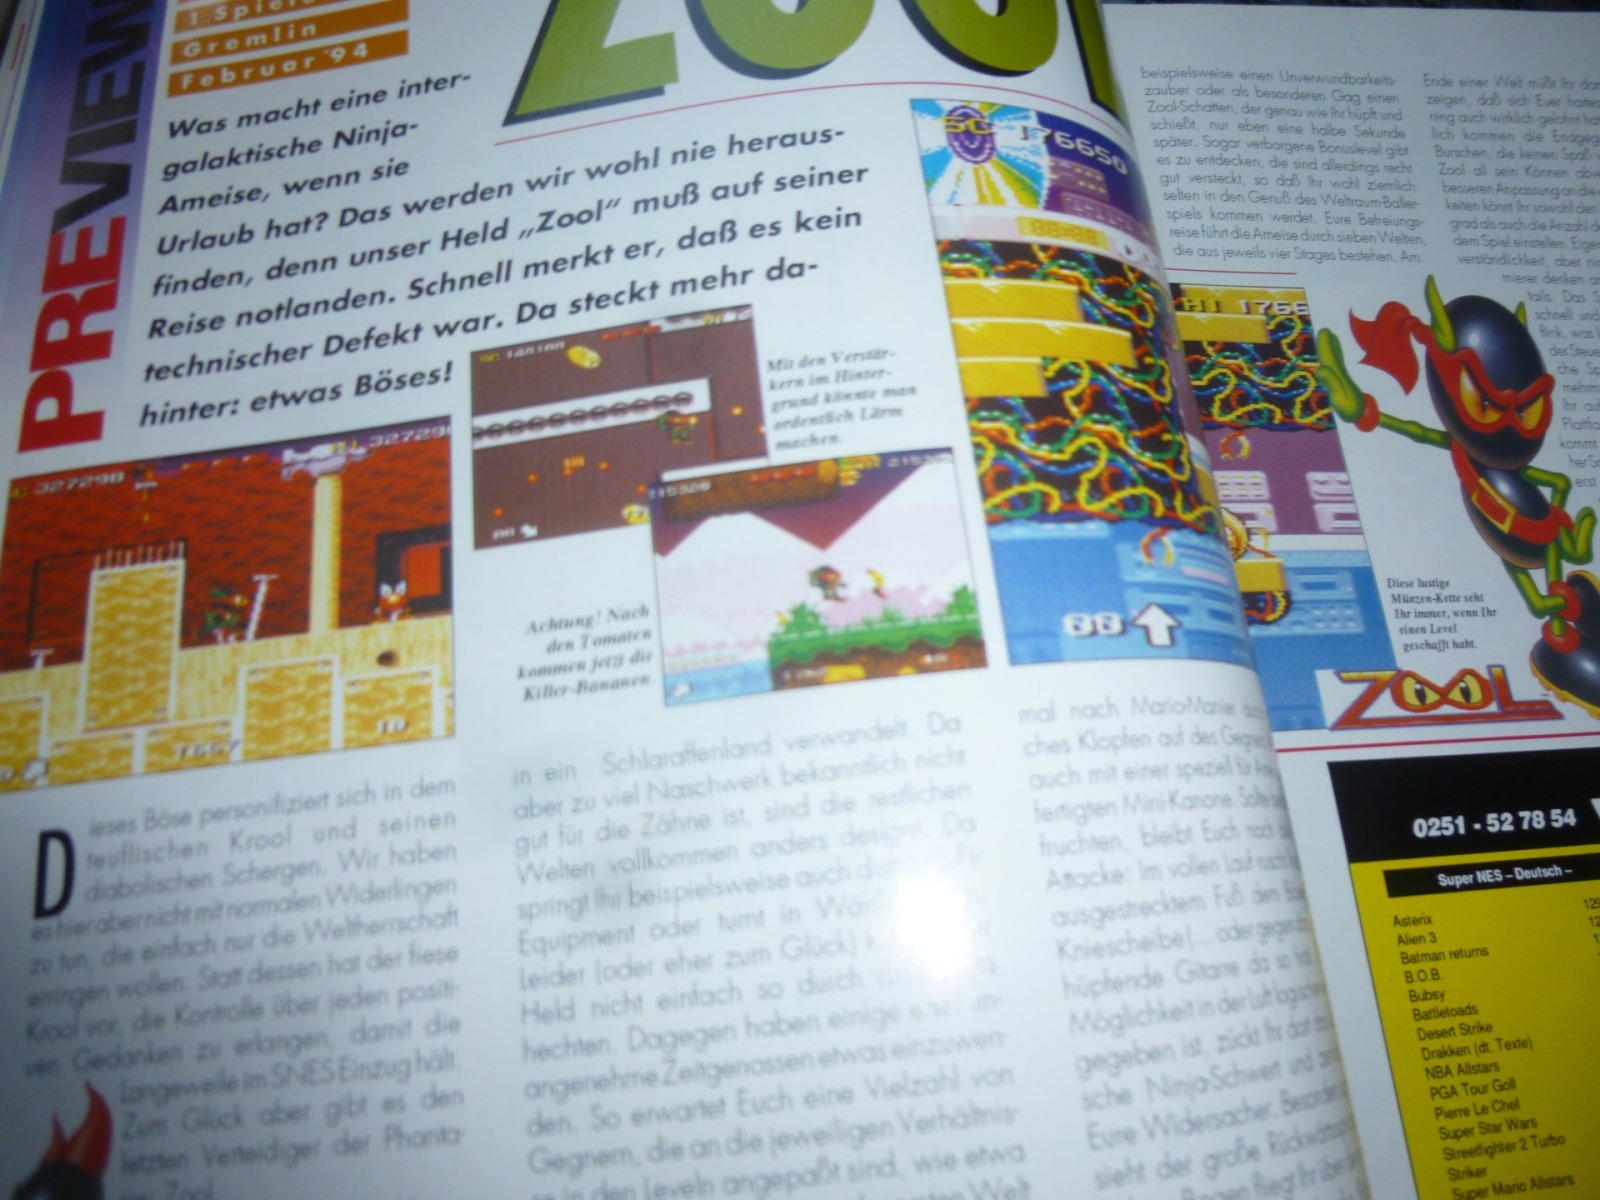 TOTAL Das unabhängige Magazin - 100% Nintendo - Ausgabe 12/93 1993 6